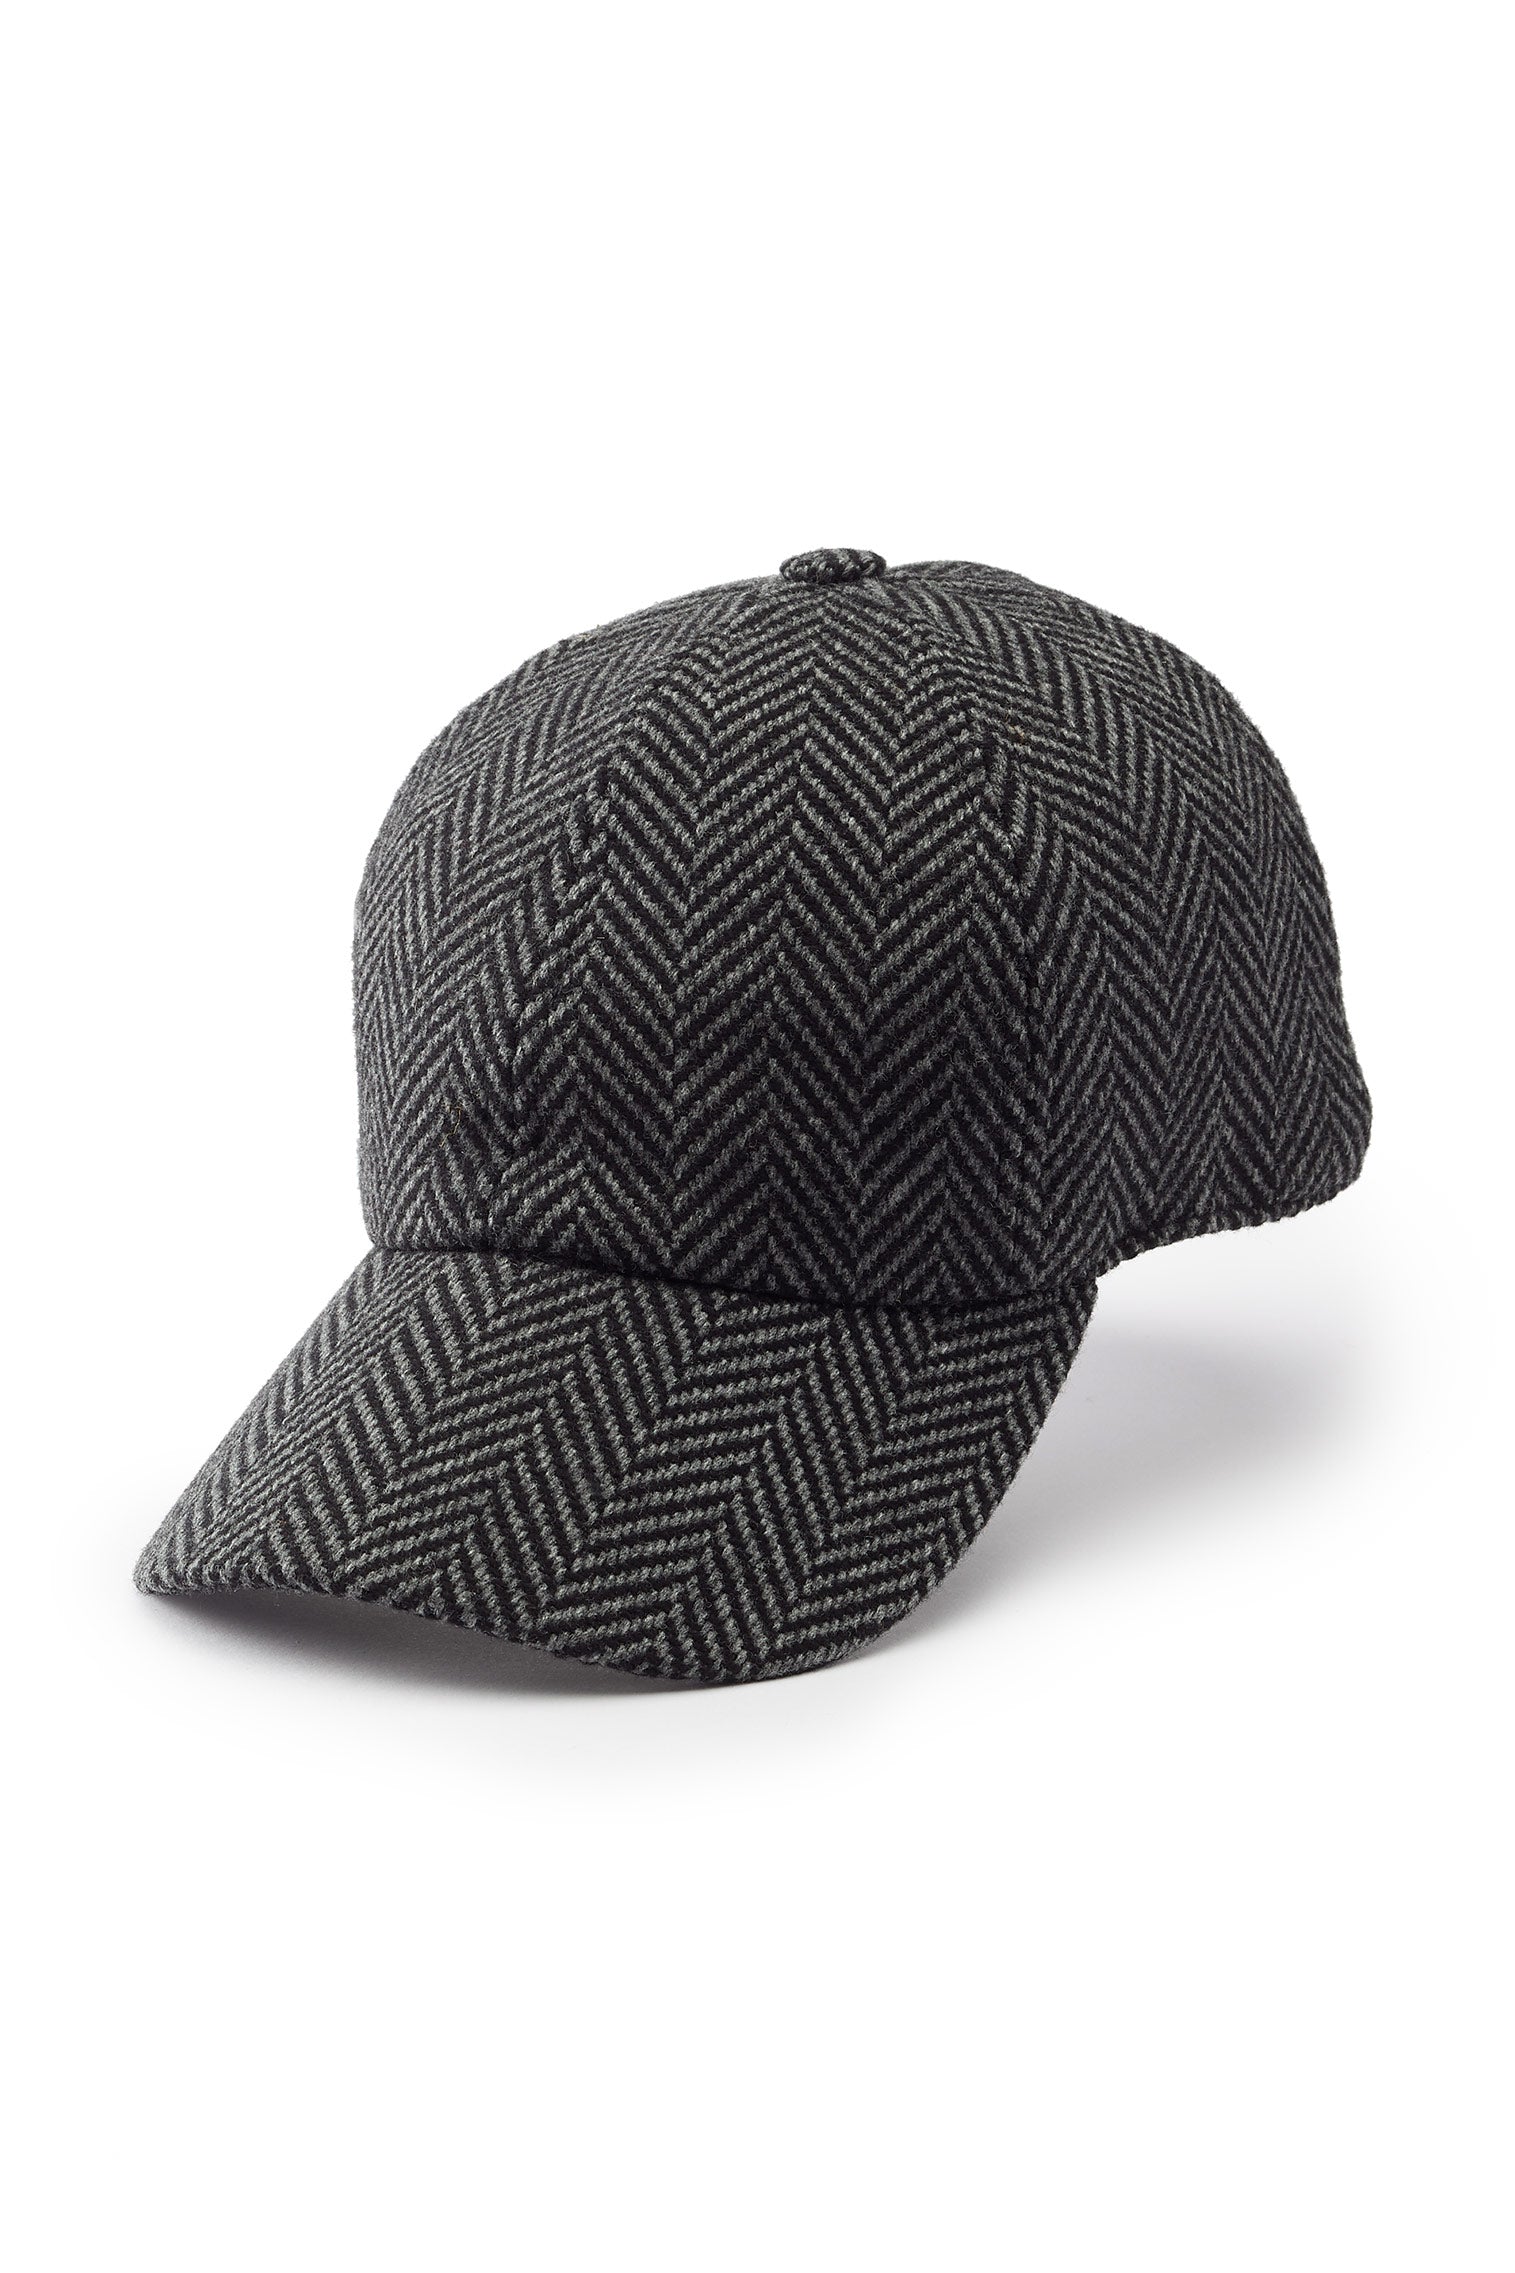 Escorial Wool Baseball Cap - Escorial Wool Headwear - Lock & Co. Hatters London UK